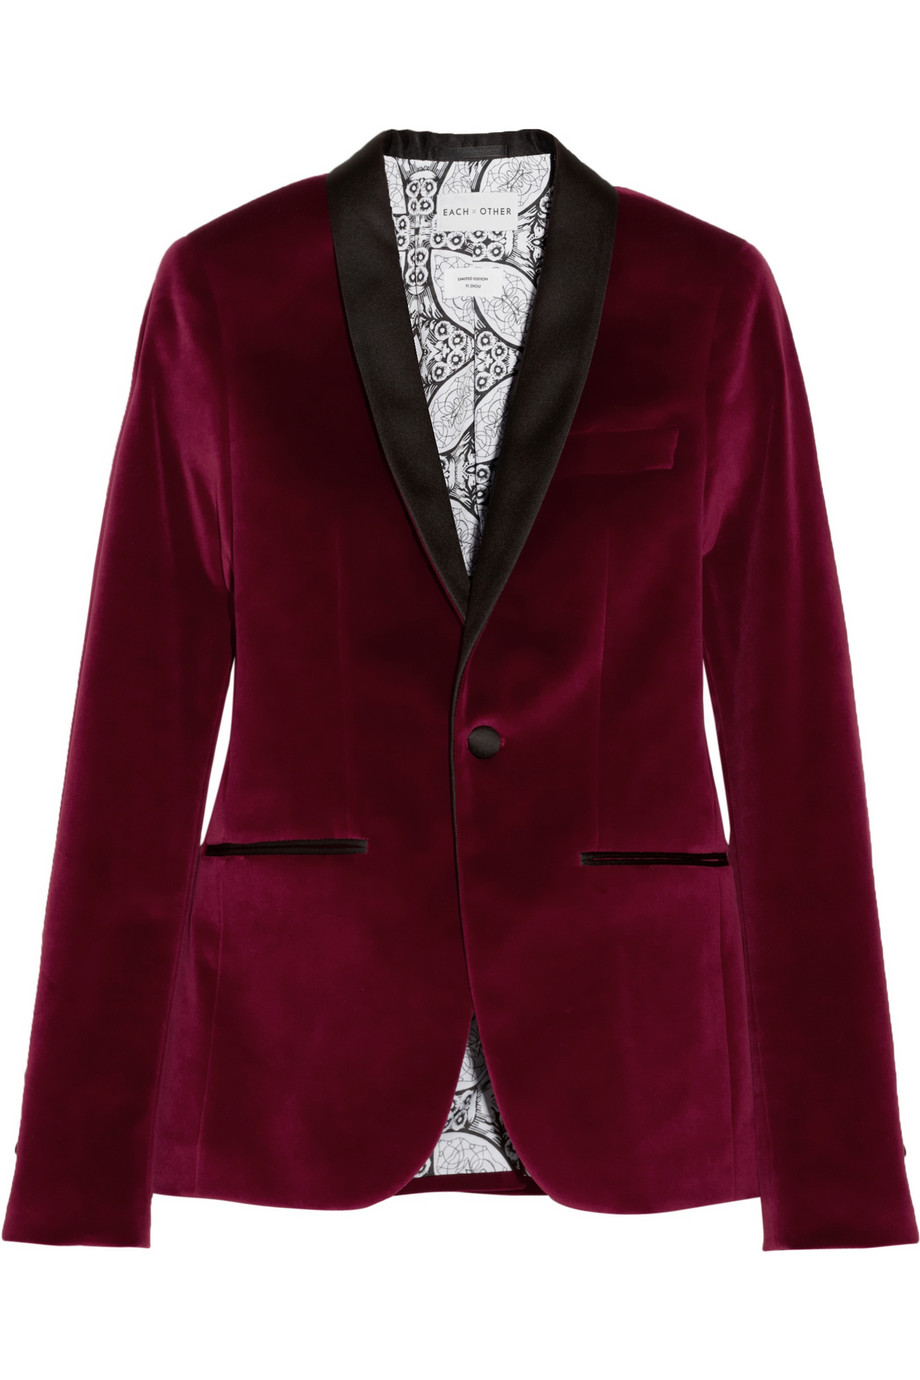 Each x Other Satin-trimmed Velvet Tuxedo Blazer in Red - Lyst